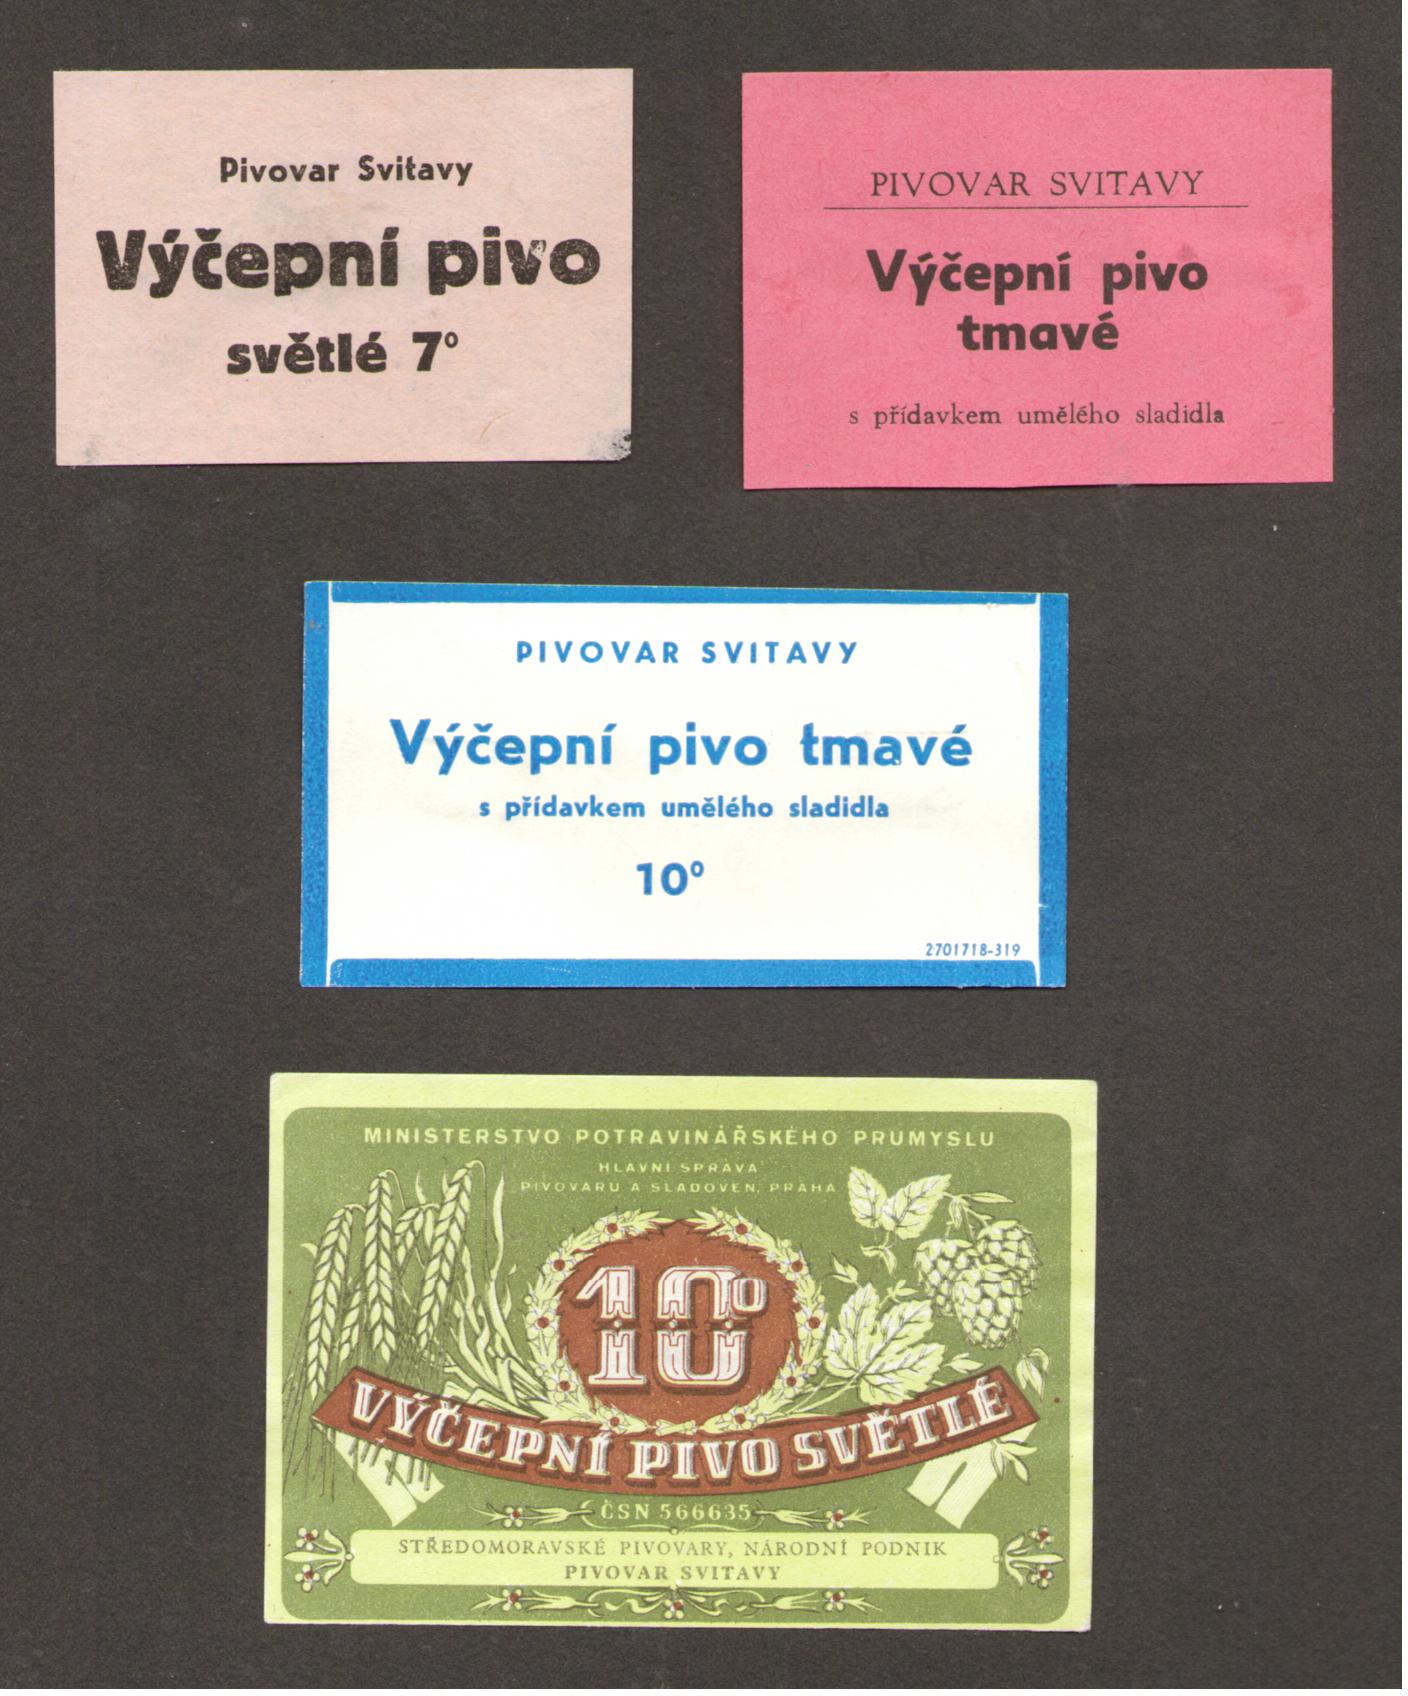 Svitavy archiválie 1950  etikety